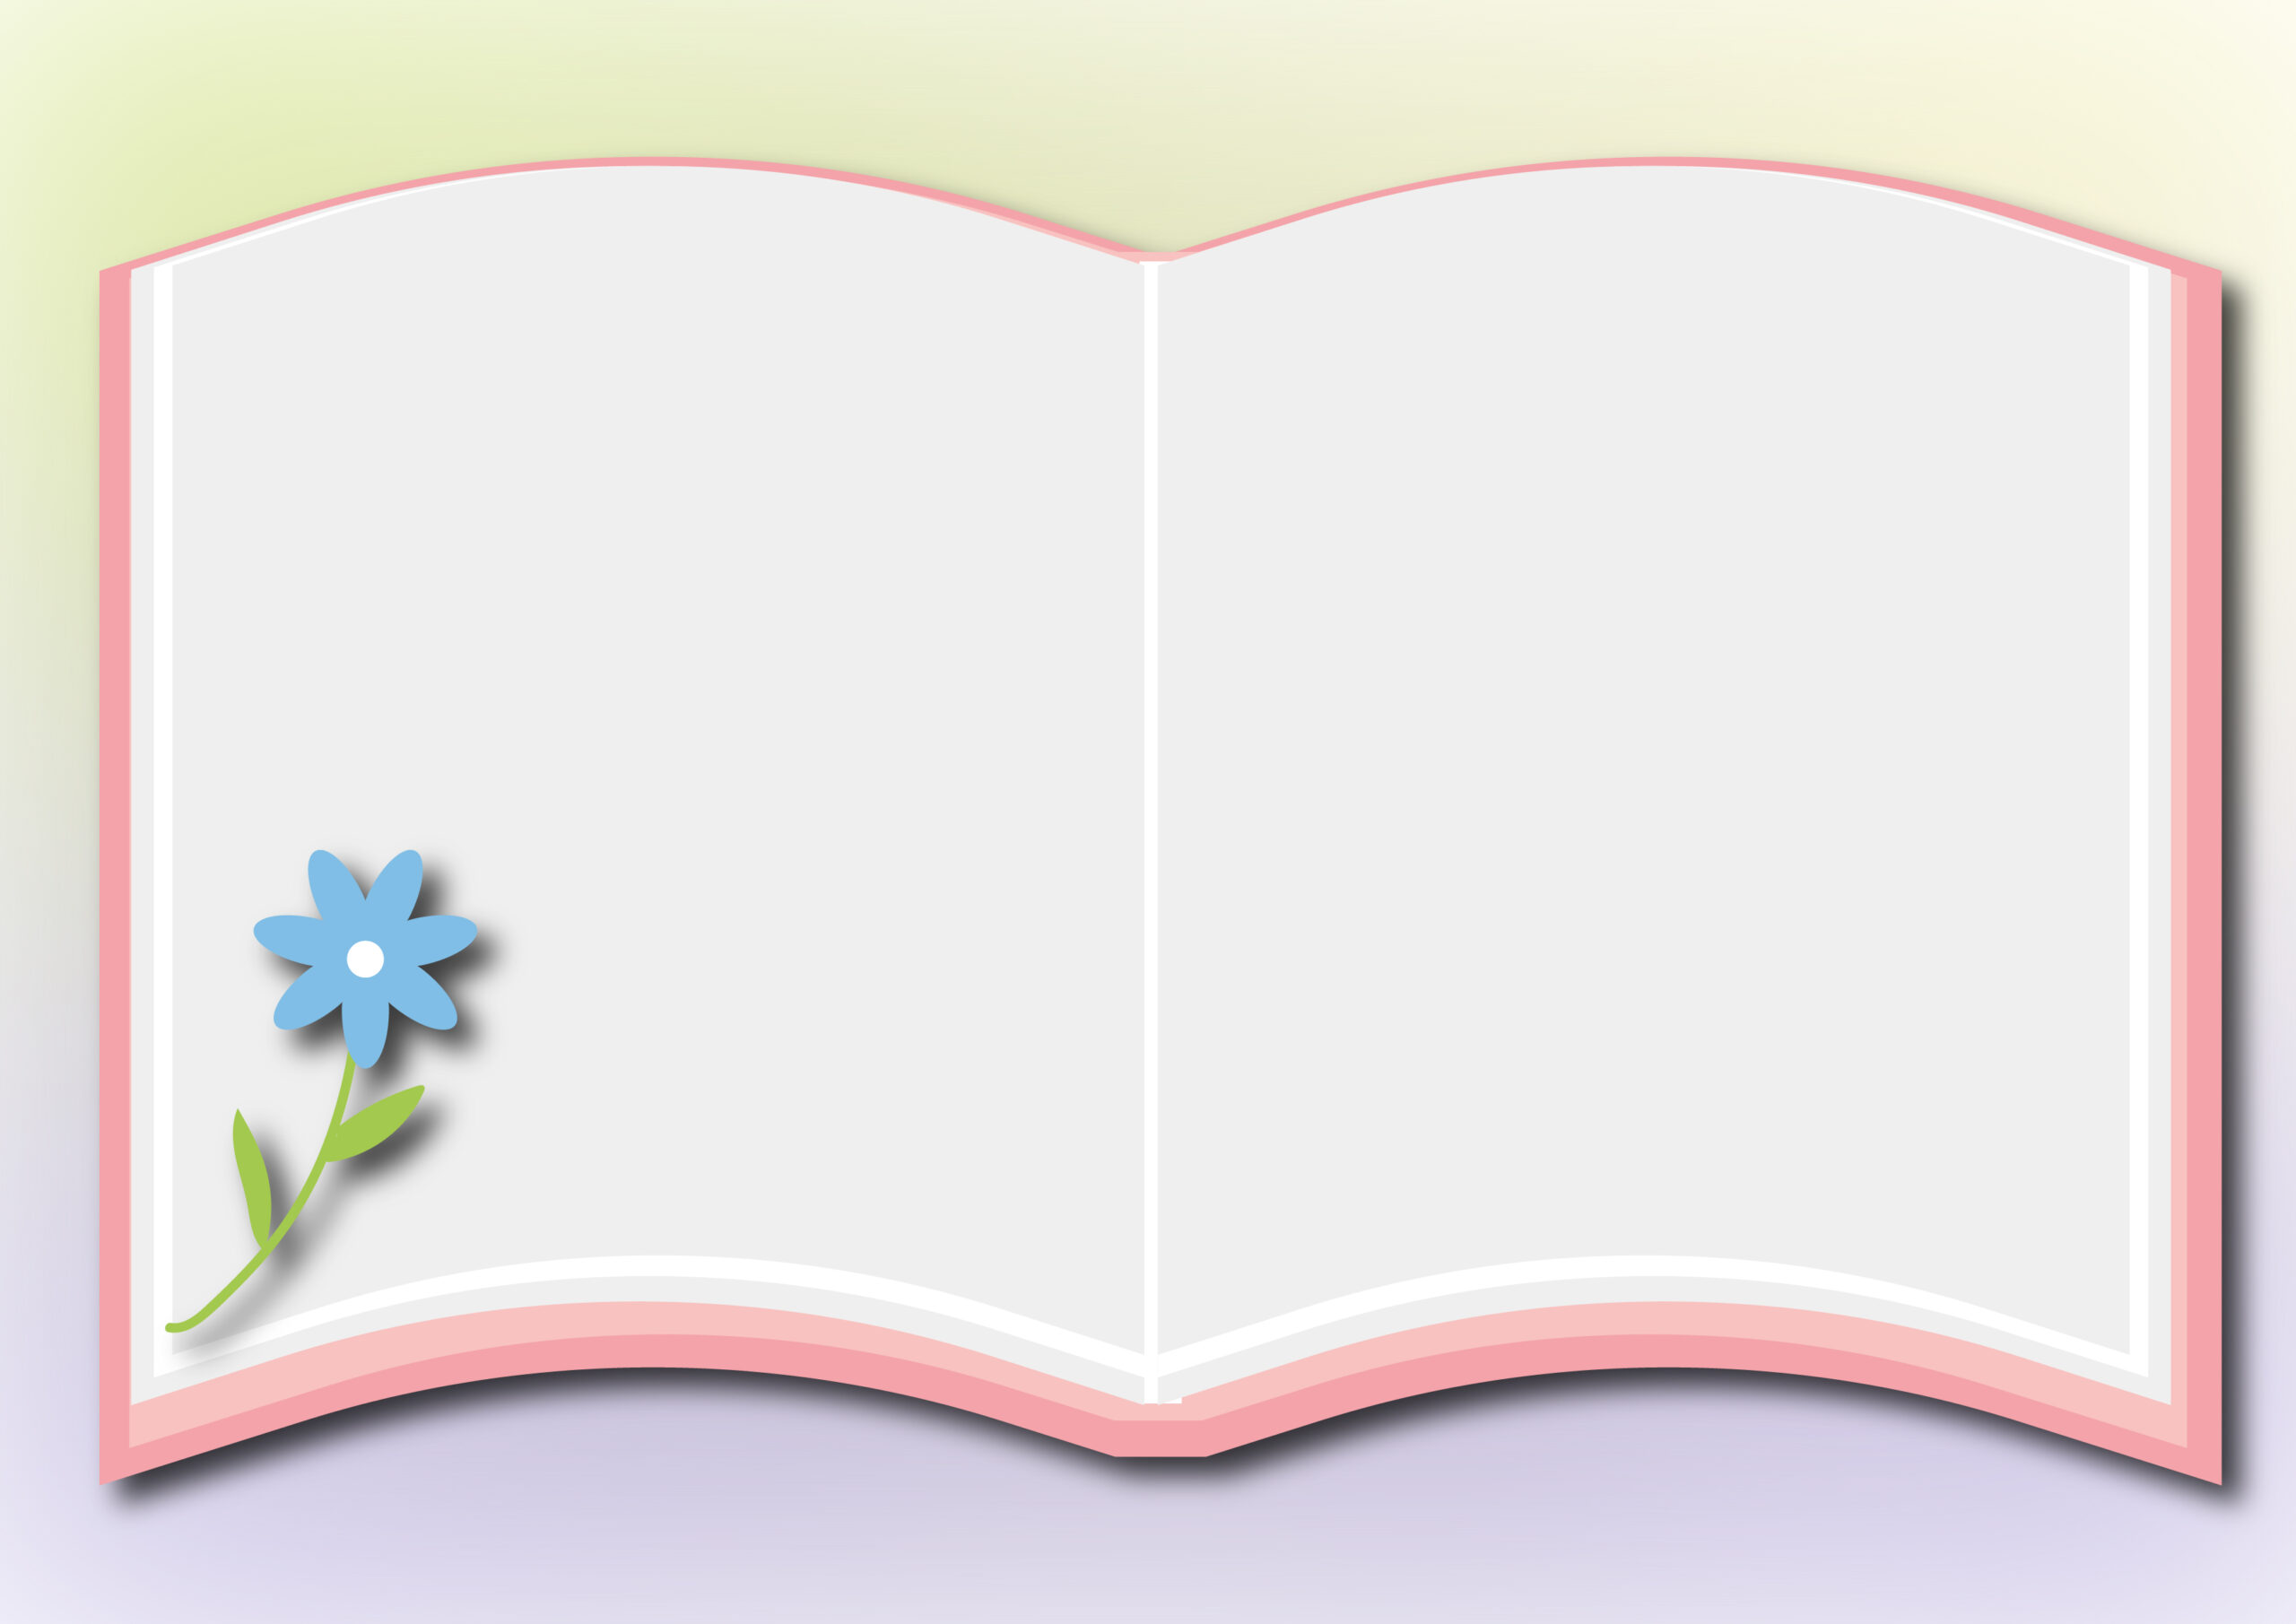 観察日記や夏休みの宿題の飾り枠に役立つ本のイラストフレーム素材となっております。左端に描かれた青い花がかわいいデザインです。図書室や図書館の注意喚起やお知らせの張り紙などにもおすすめのフレームになります。ダウンロード：JPGA4